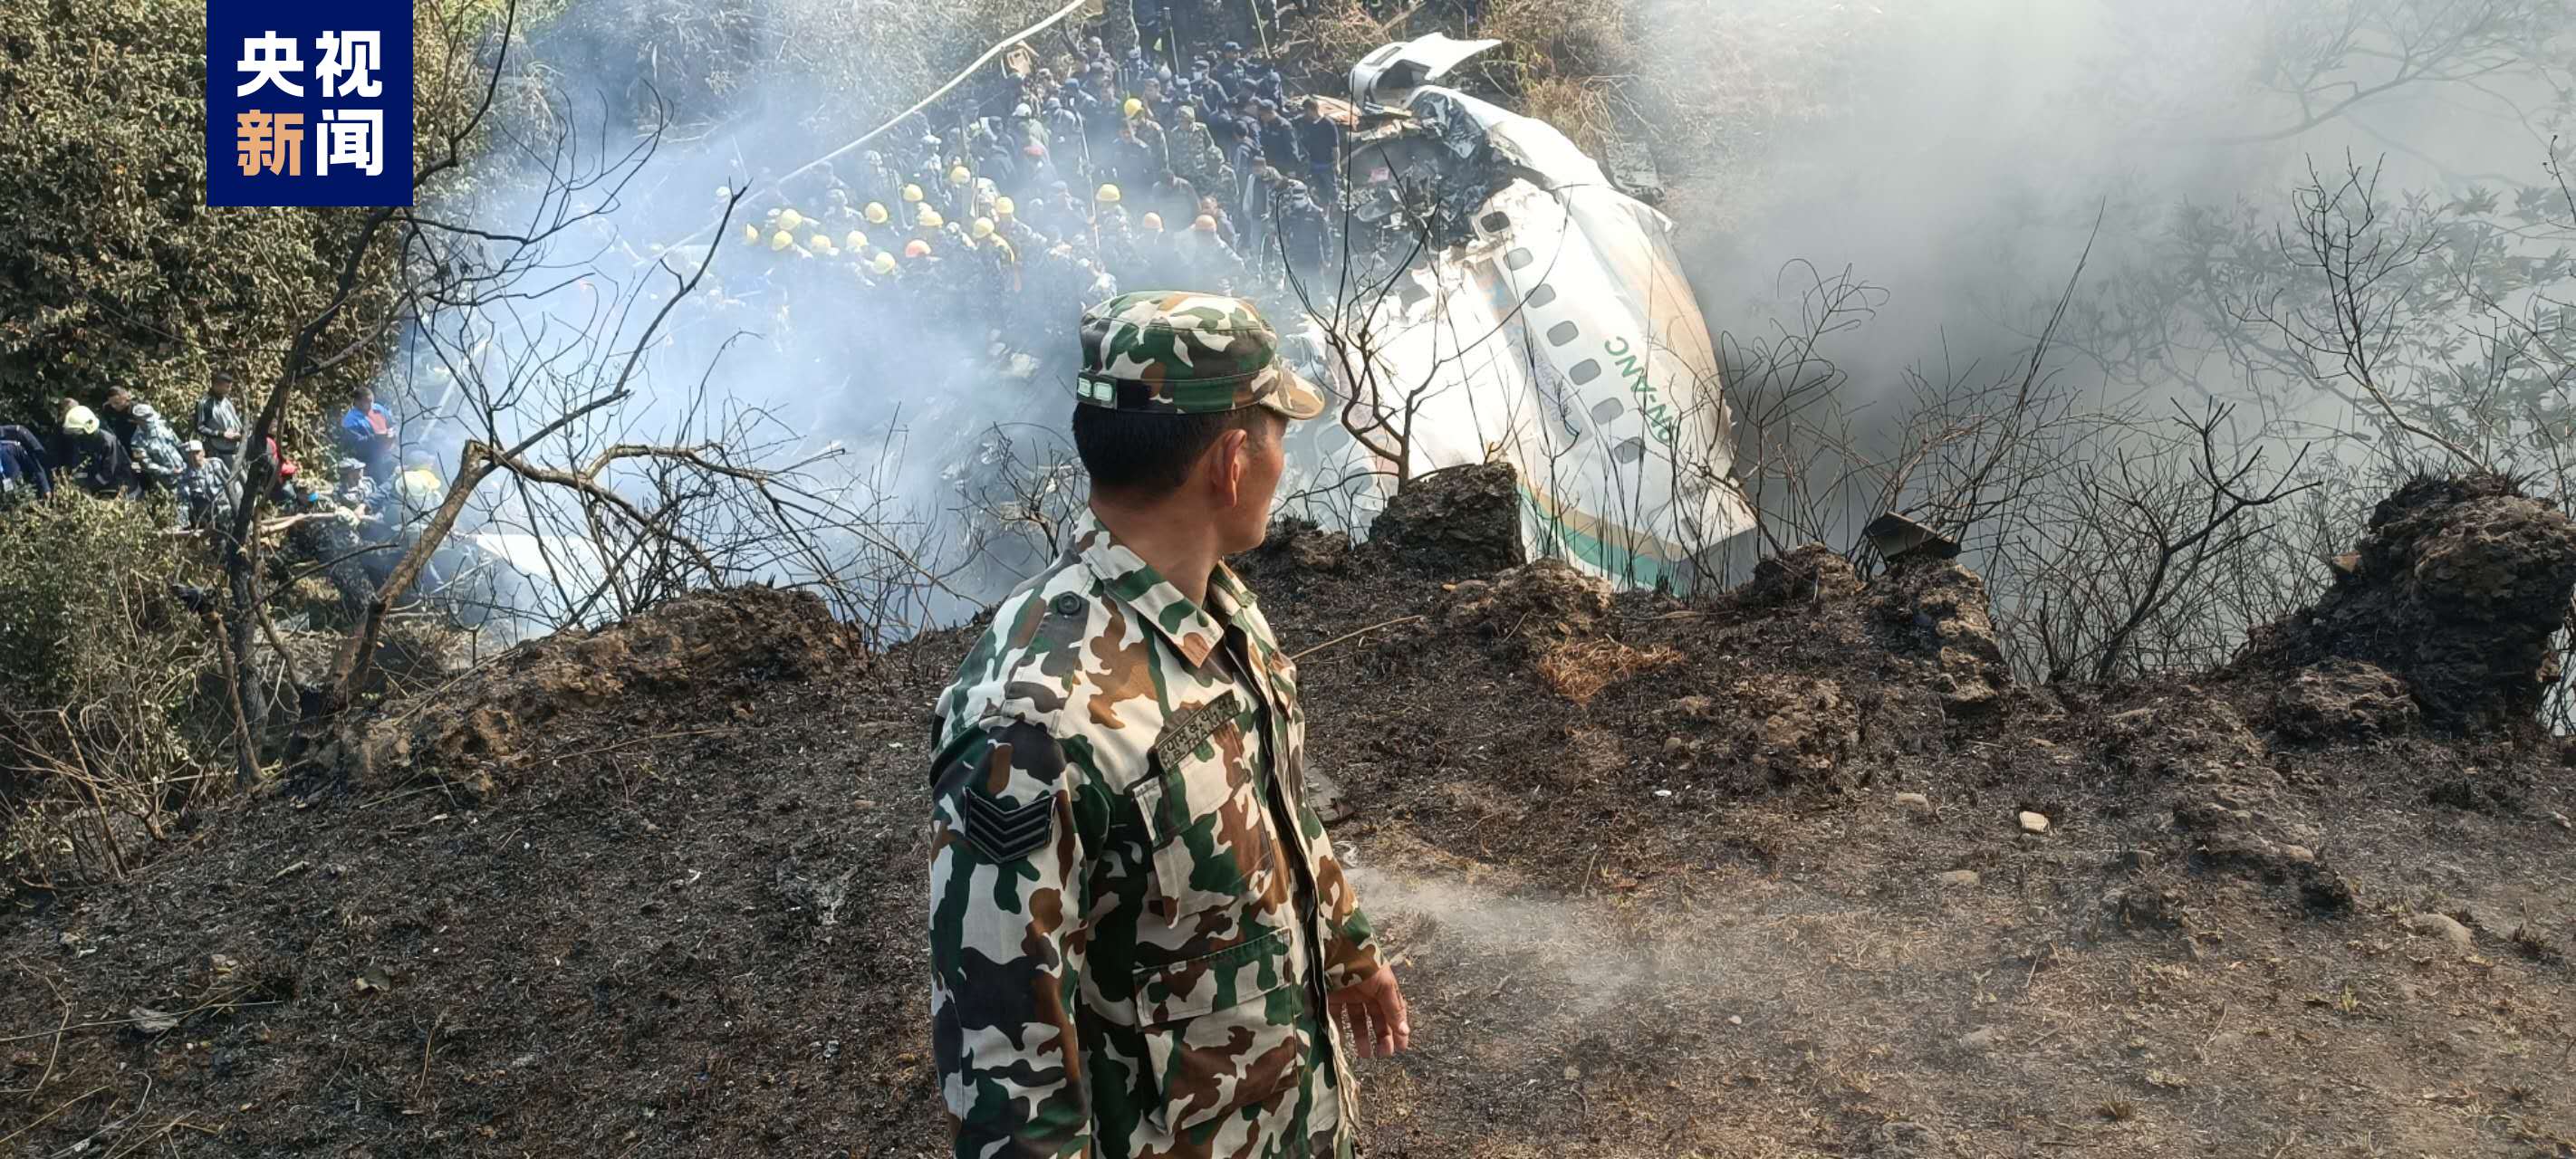 尼泊尔坠机事故41名遇难者身份已确认